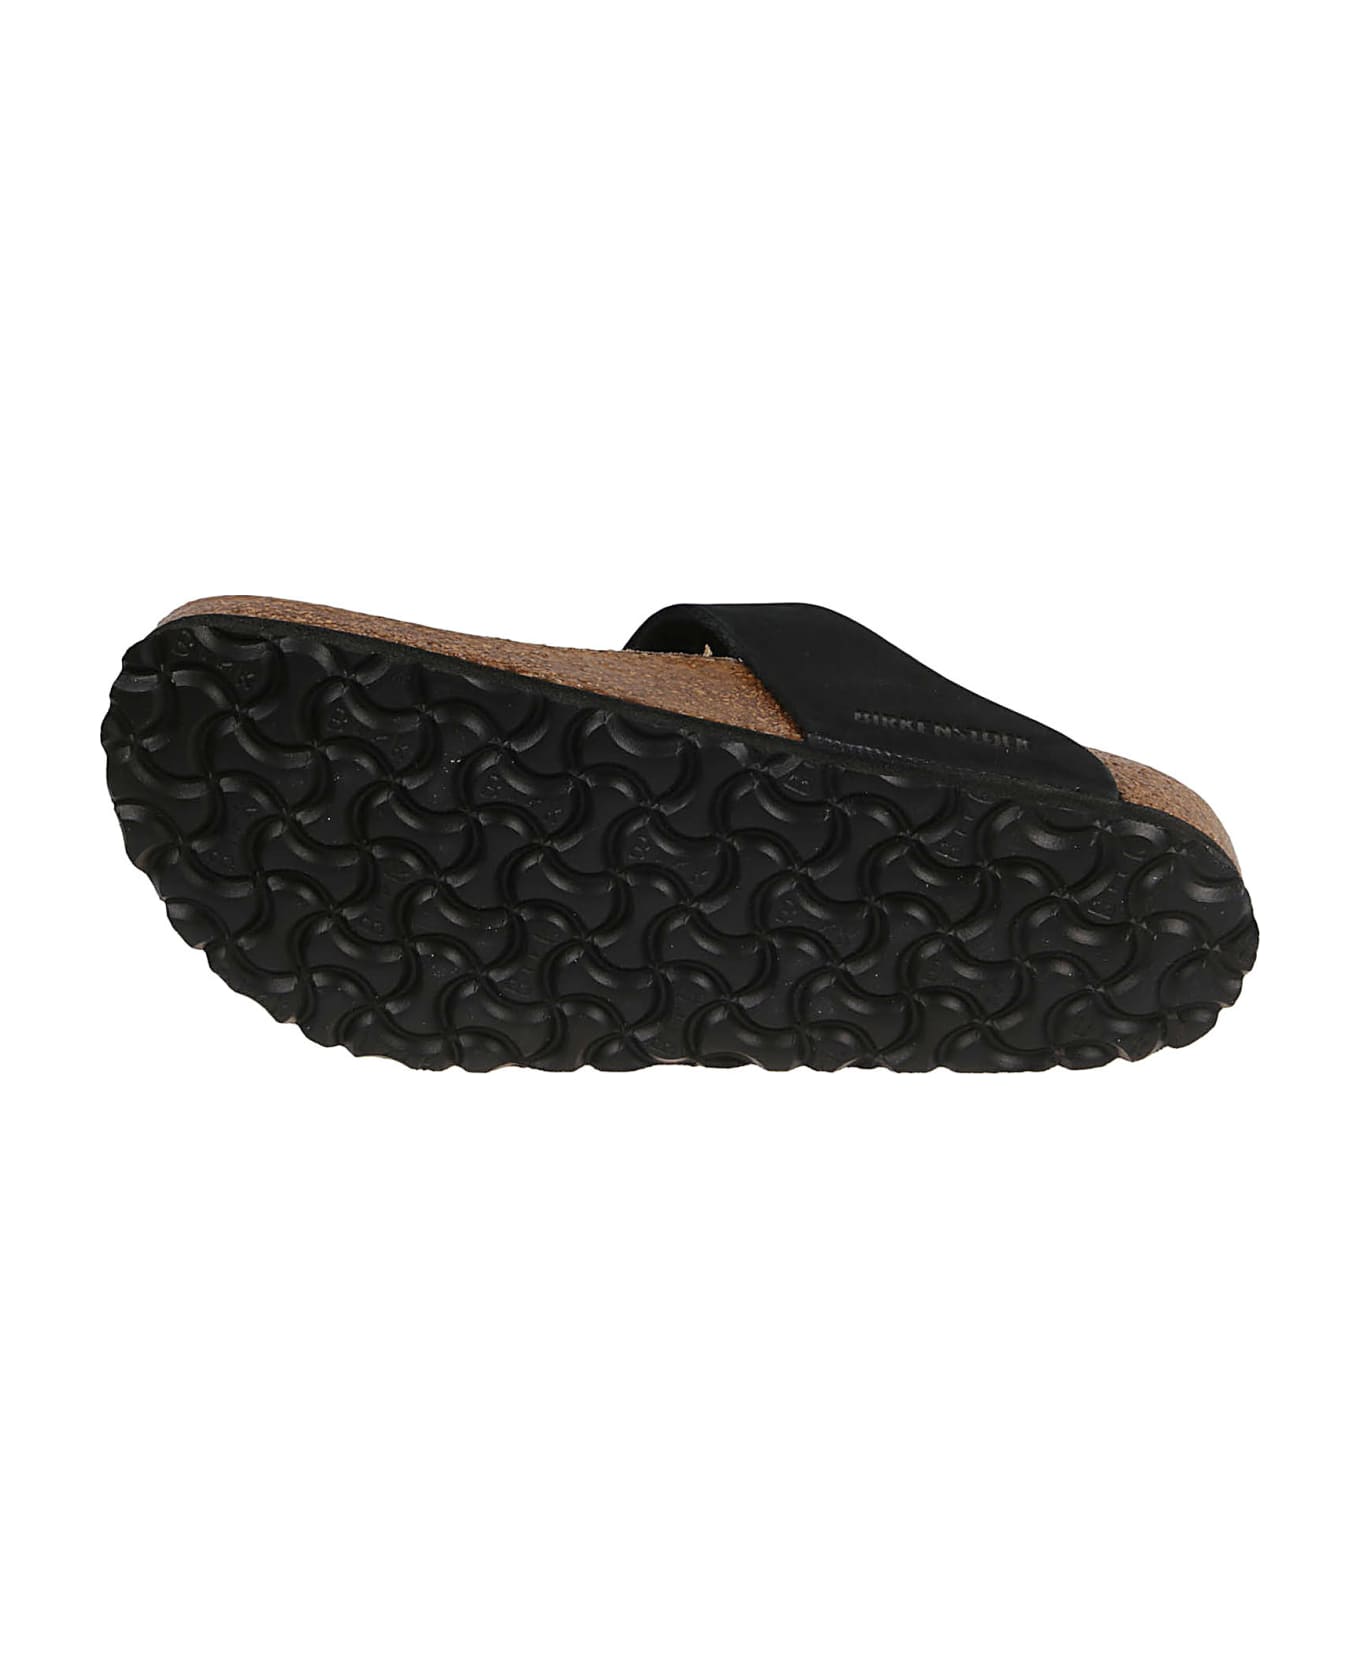 Birkenstock Gizeh Big Buckle Sandals - Black